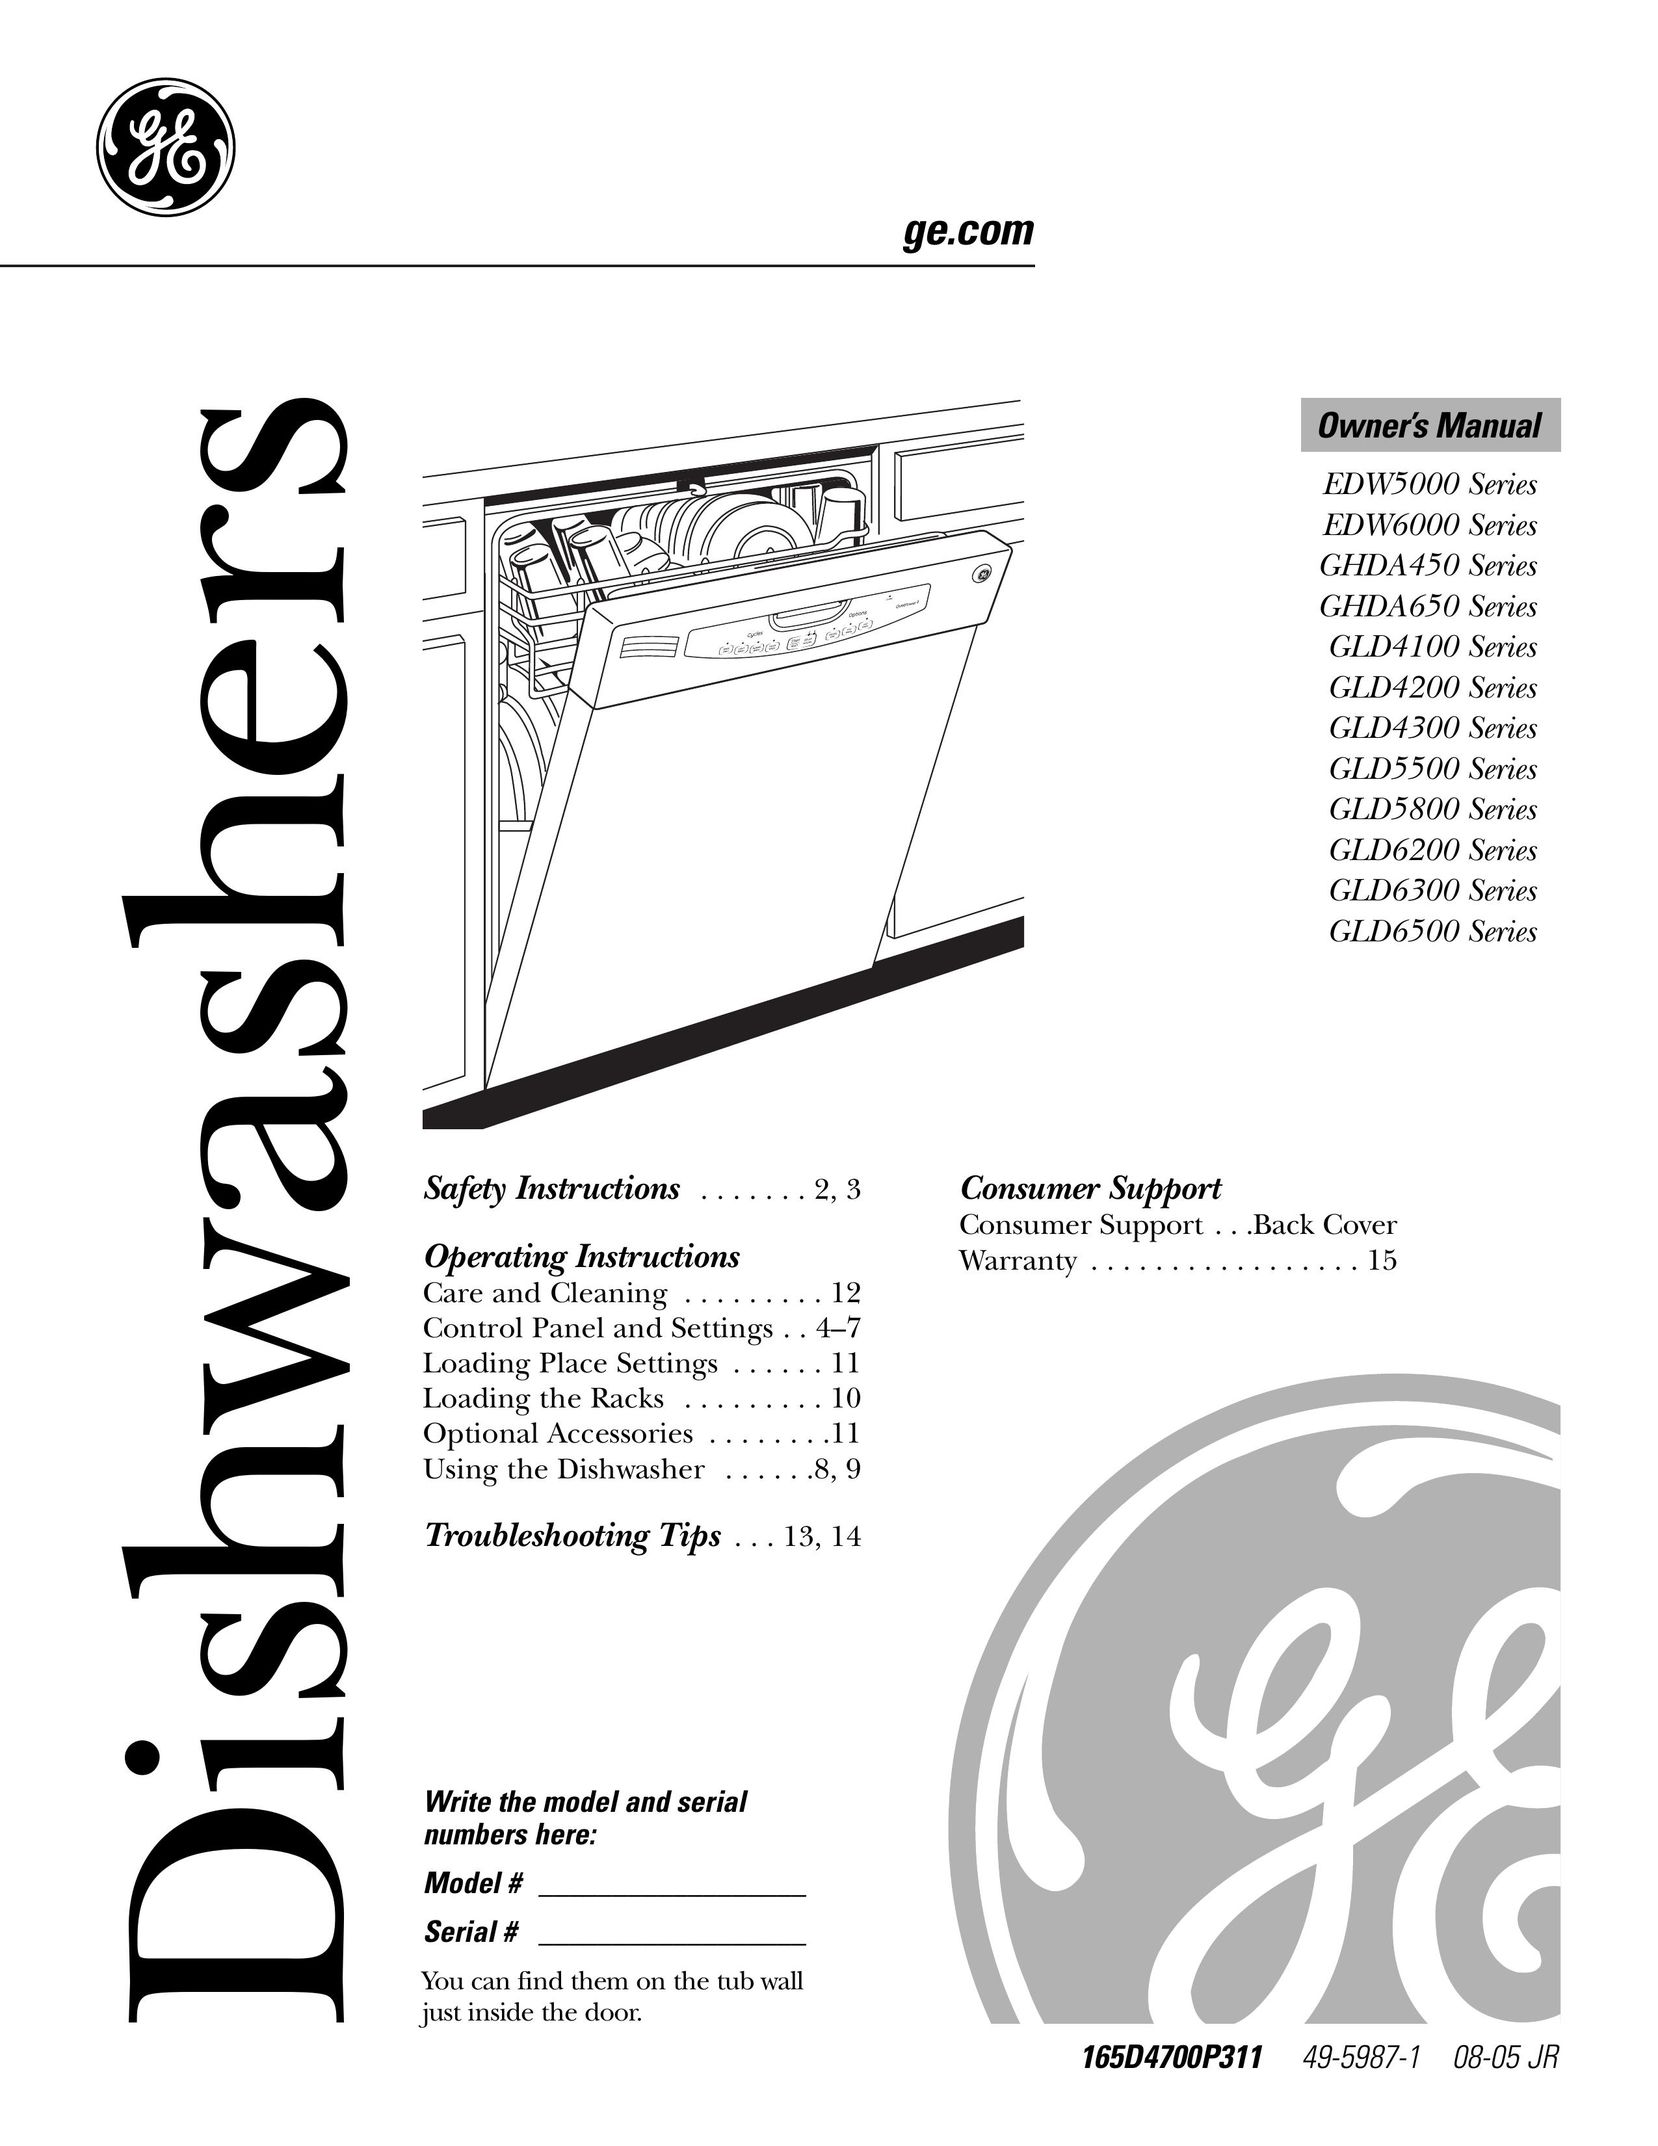 GE Monogram GLD5800 Dishwasher User Manual